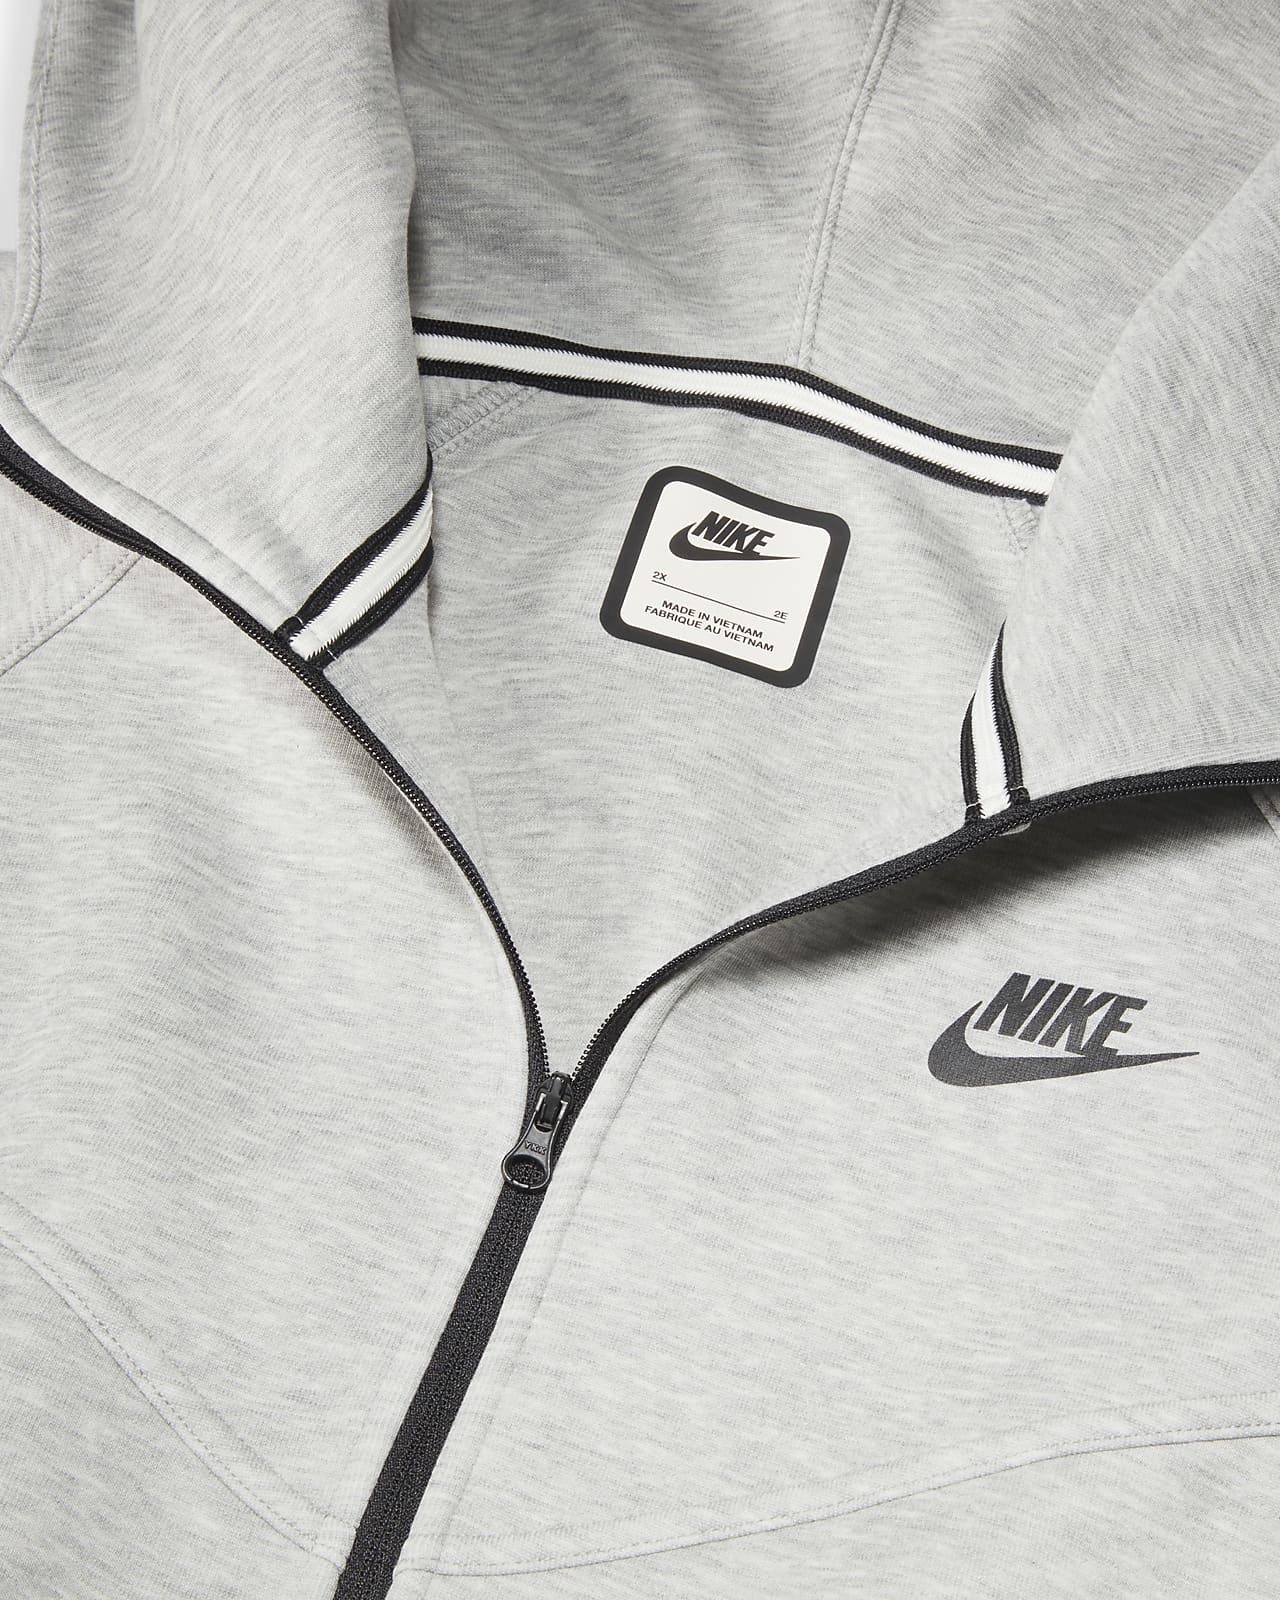 Nike Sportswear Tech Fleece Windrunner Women's Full-Zip Hoodie (Plus Size).